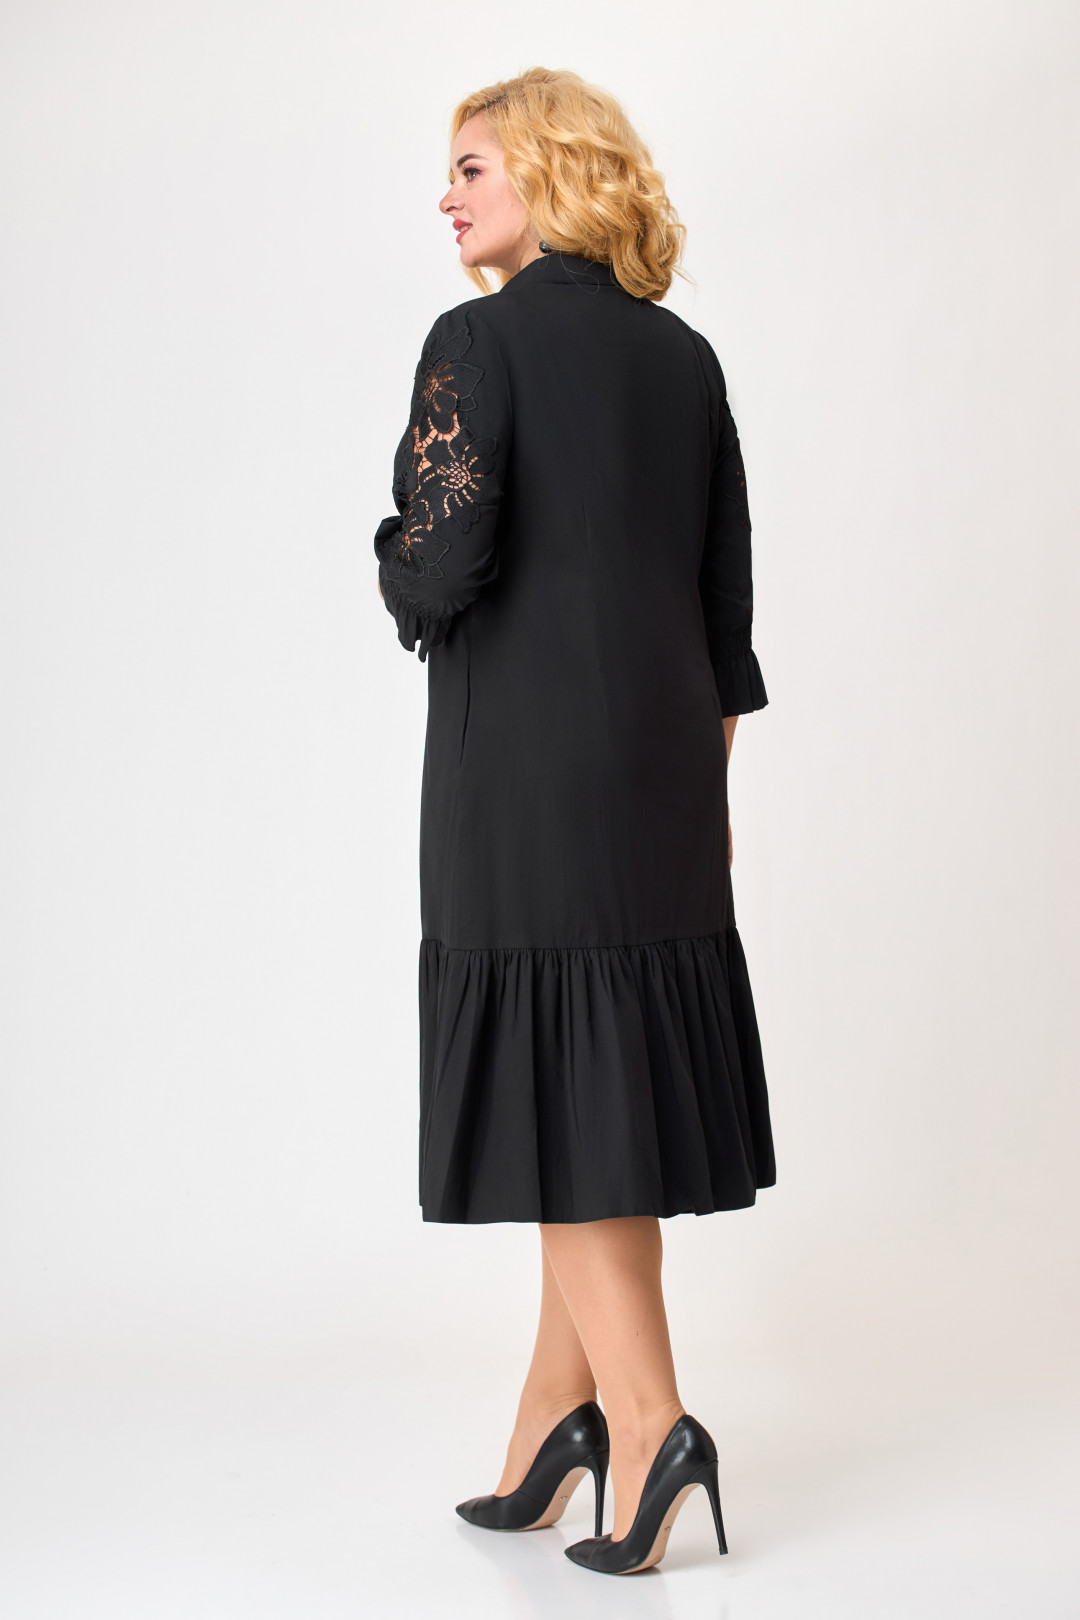 Платье Светлана-Стиль 1854 черный